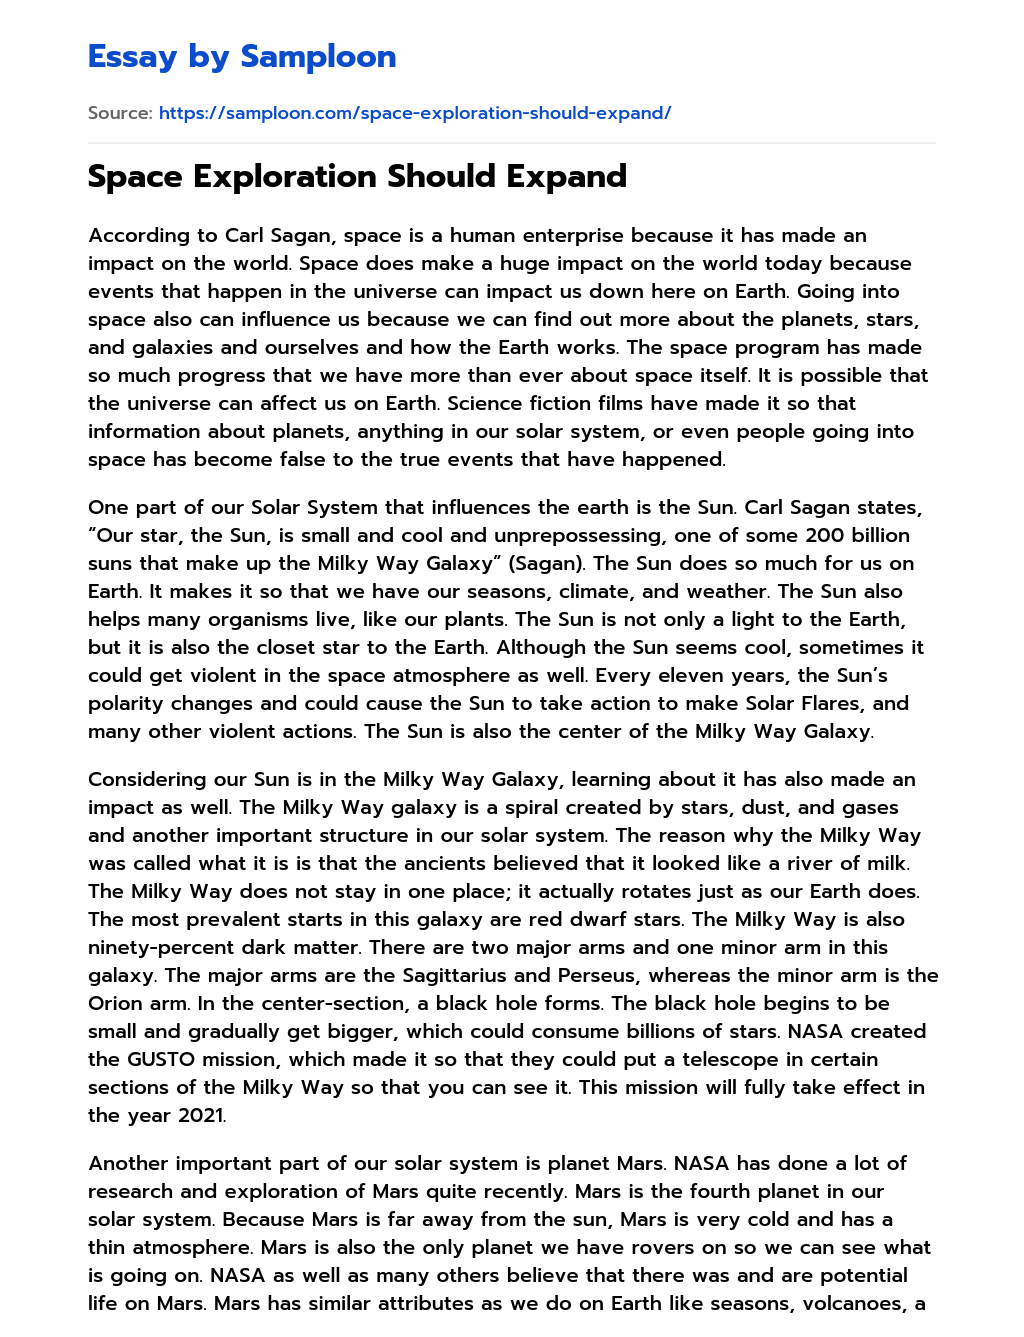 Space Exploration Should Expand essay